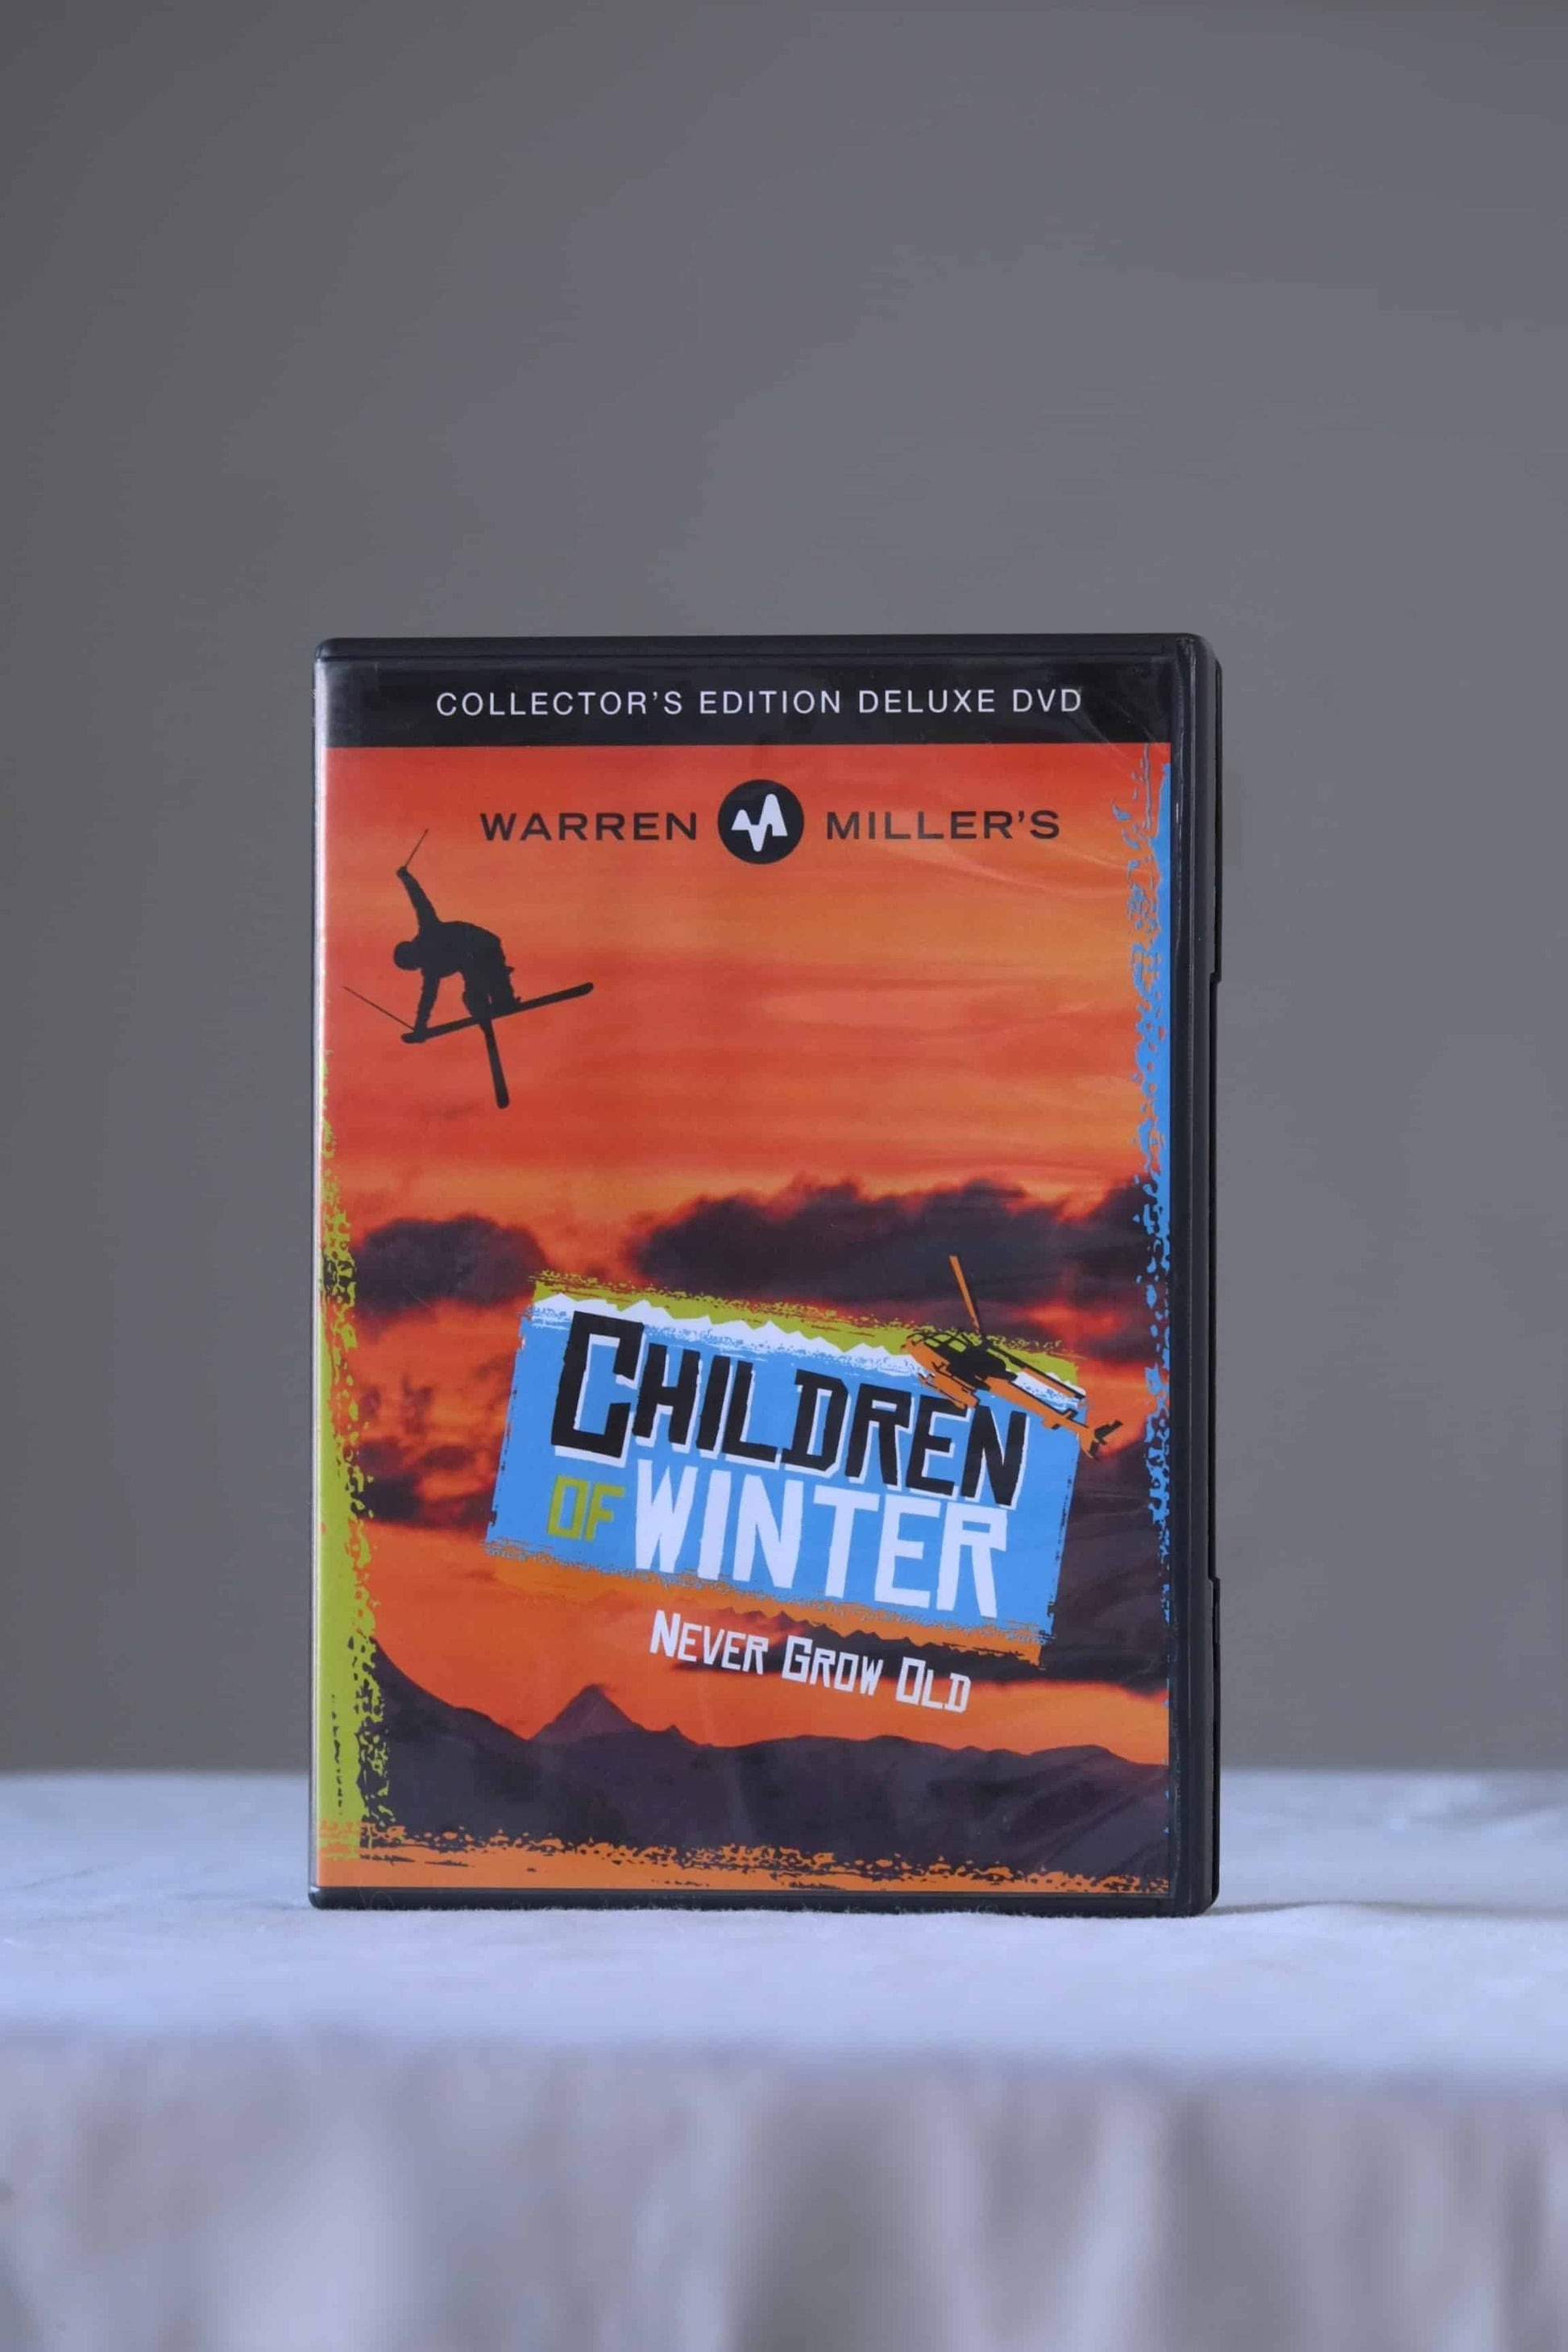 WARREN MILLER'S Children of Winter DVD